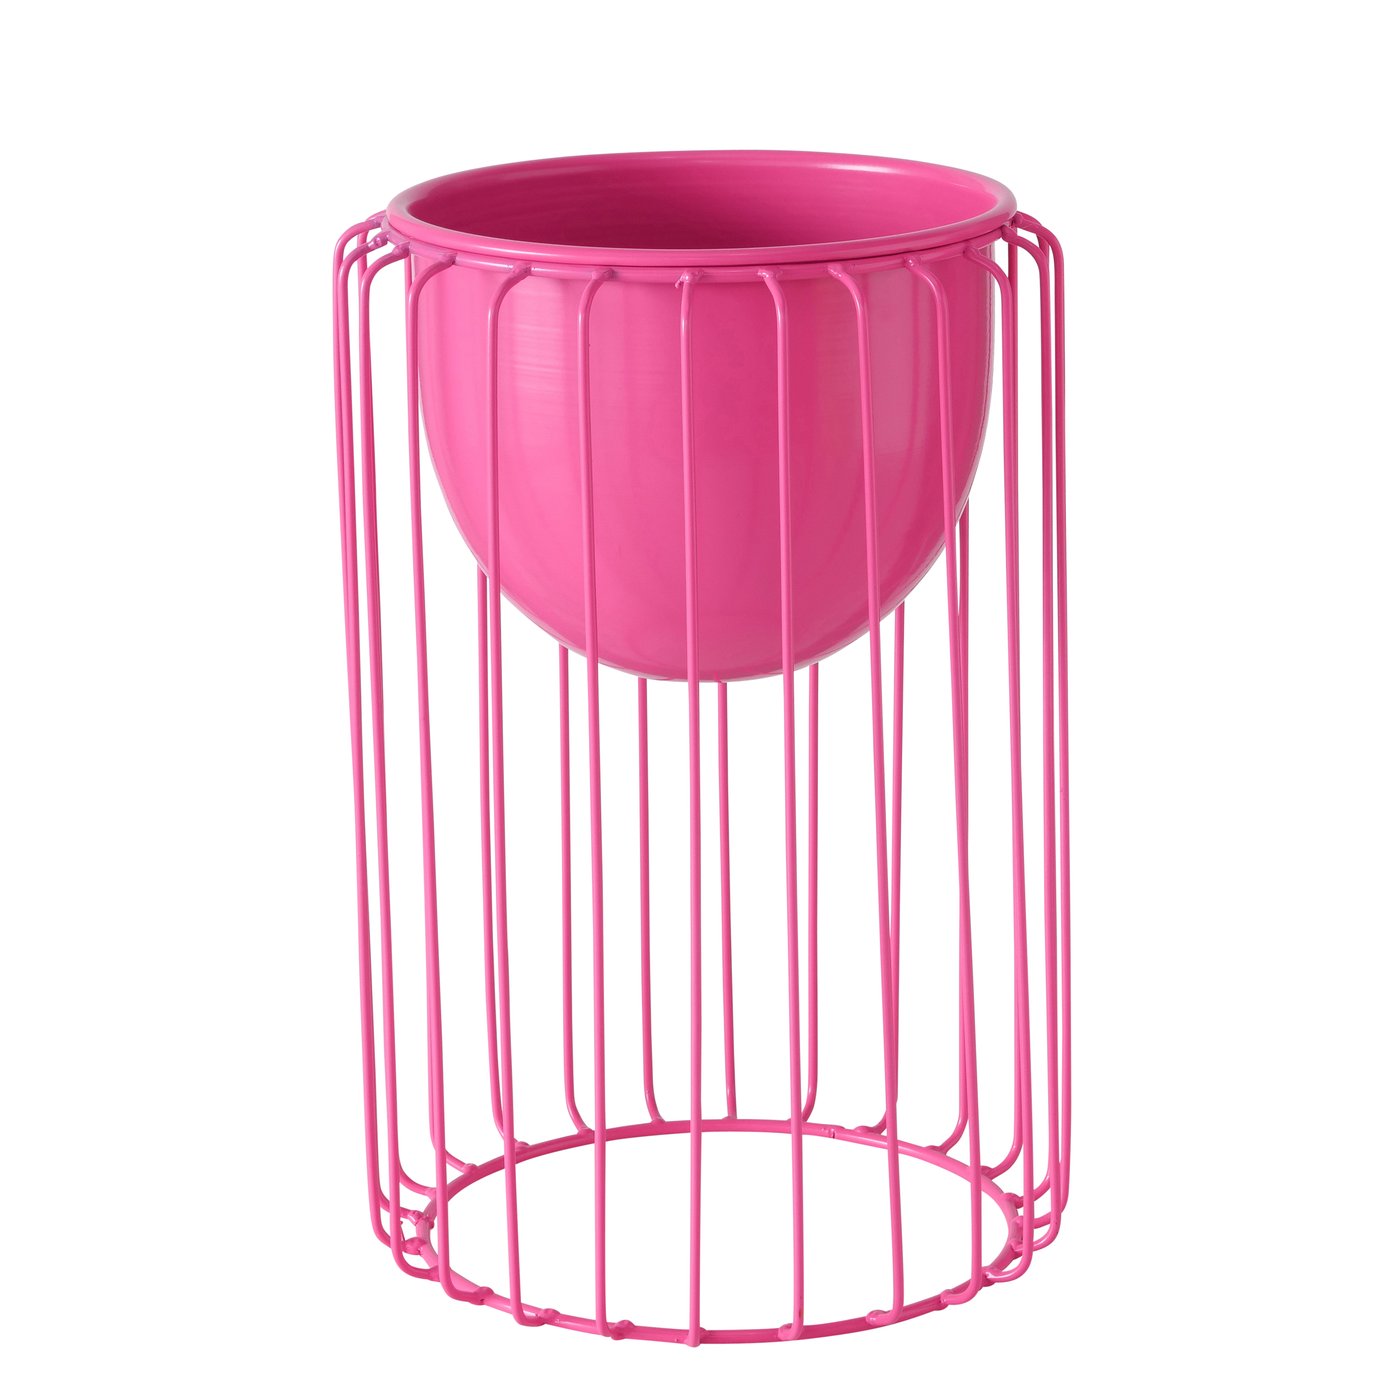 &Quirky Colour Pop Vaso Pink Metal Planter - Trouva